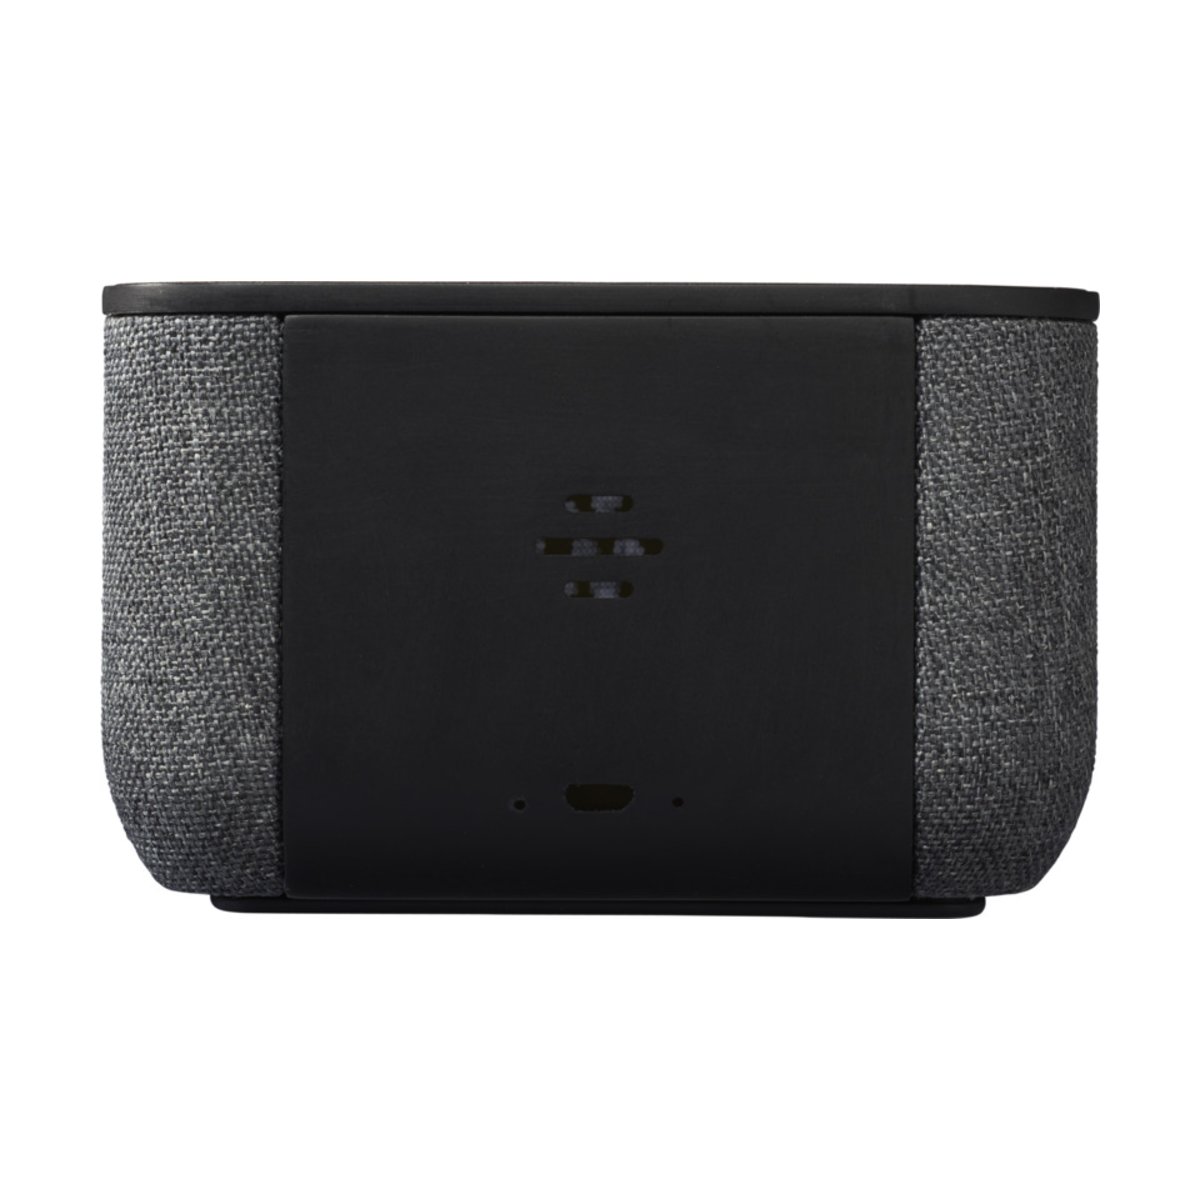 Materiałowo-drewniany głośnik Bluetooth® Shae